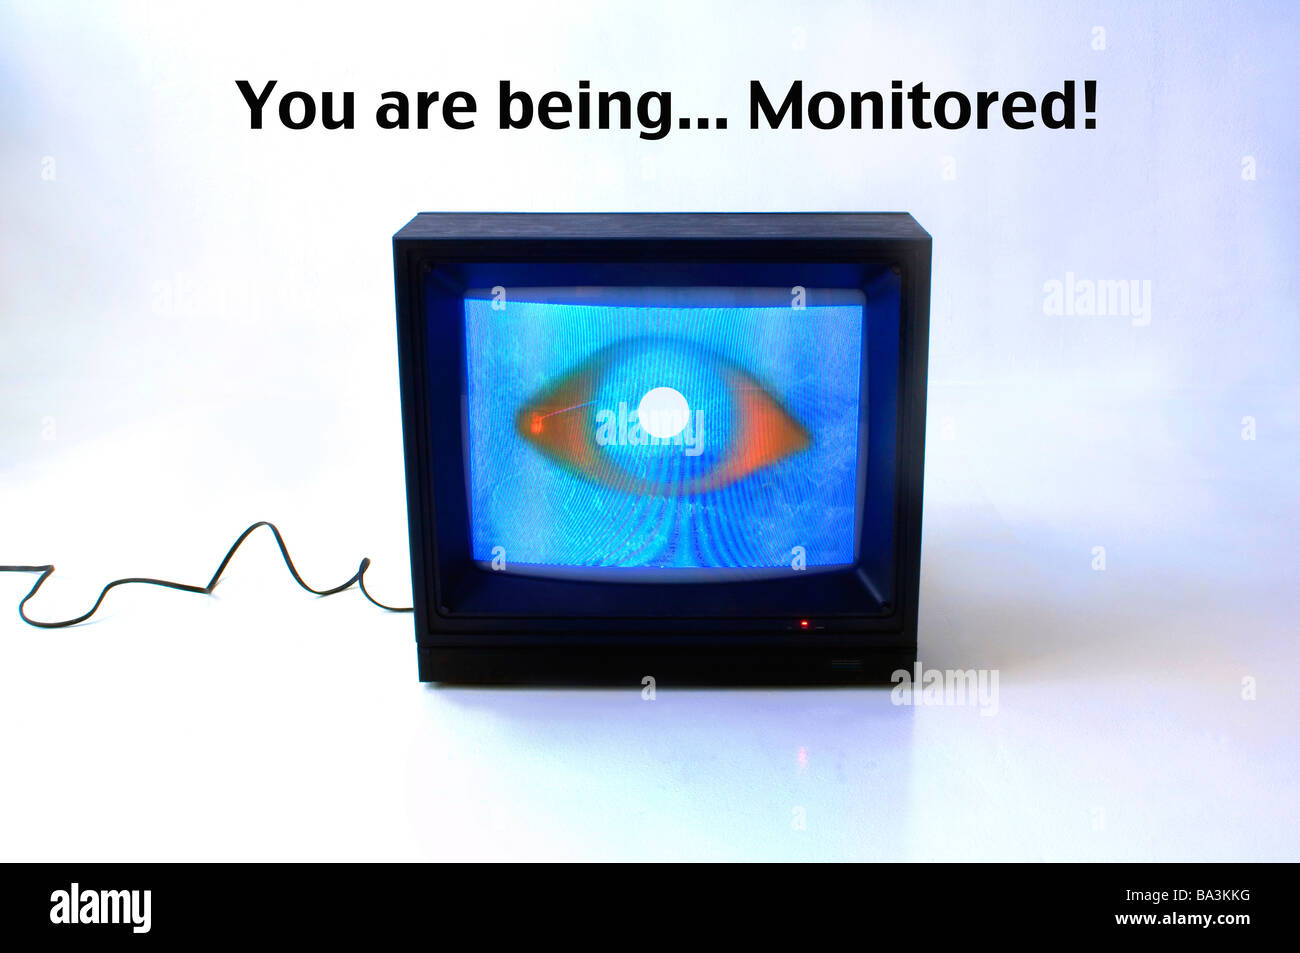 Studio professionale di monitor con schermata blu su bianco impostato con le parole "si sono monitorati!" stampato sopra Foto Stock